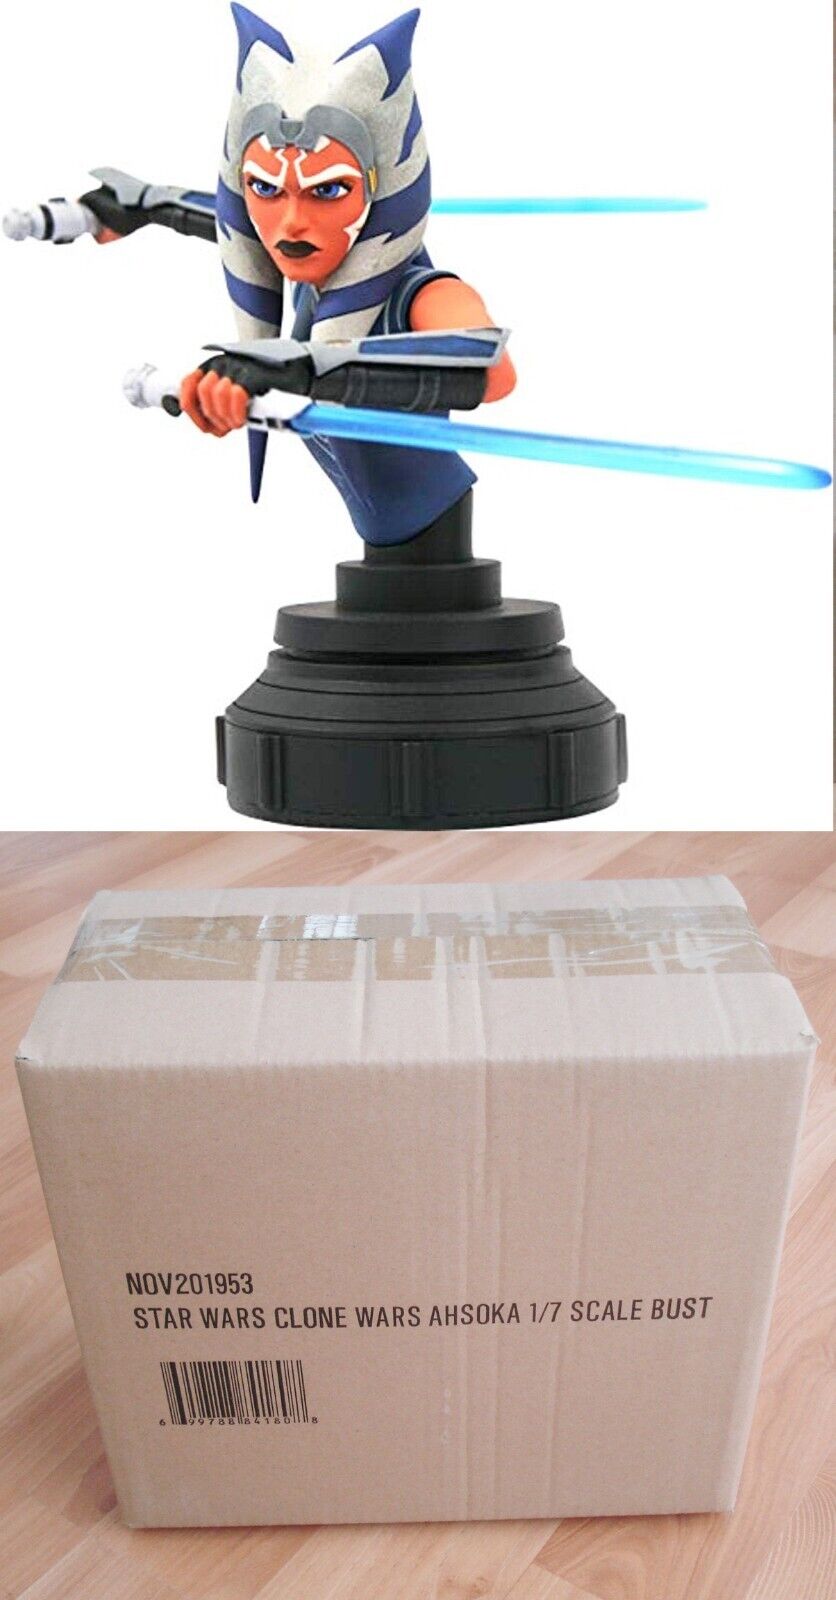 Star Wars Gentle Giant AHSOKA TANO Clone Wars Mini Bust 1:7 Scale in Sealed Box